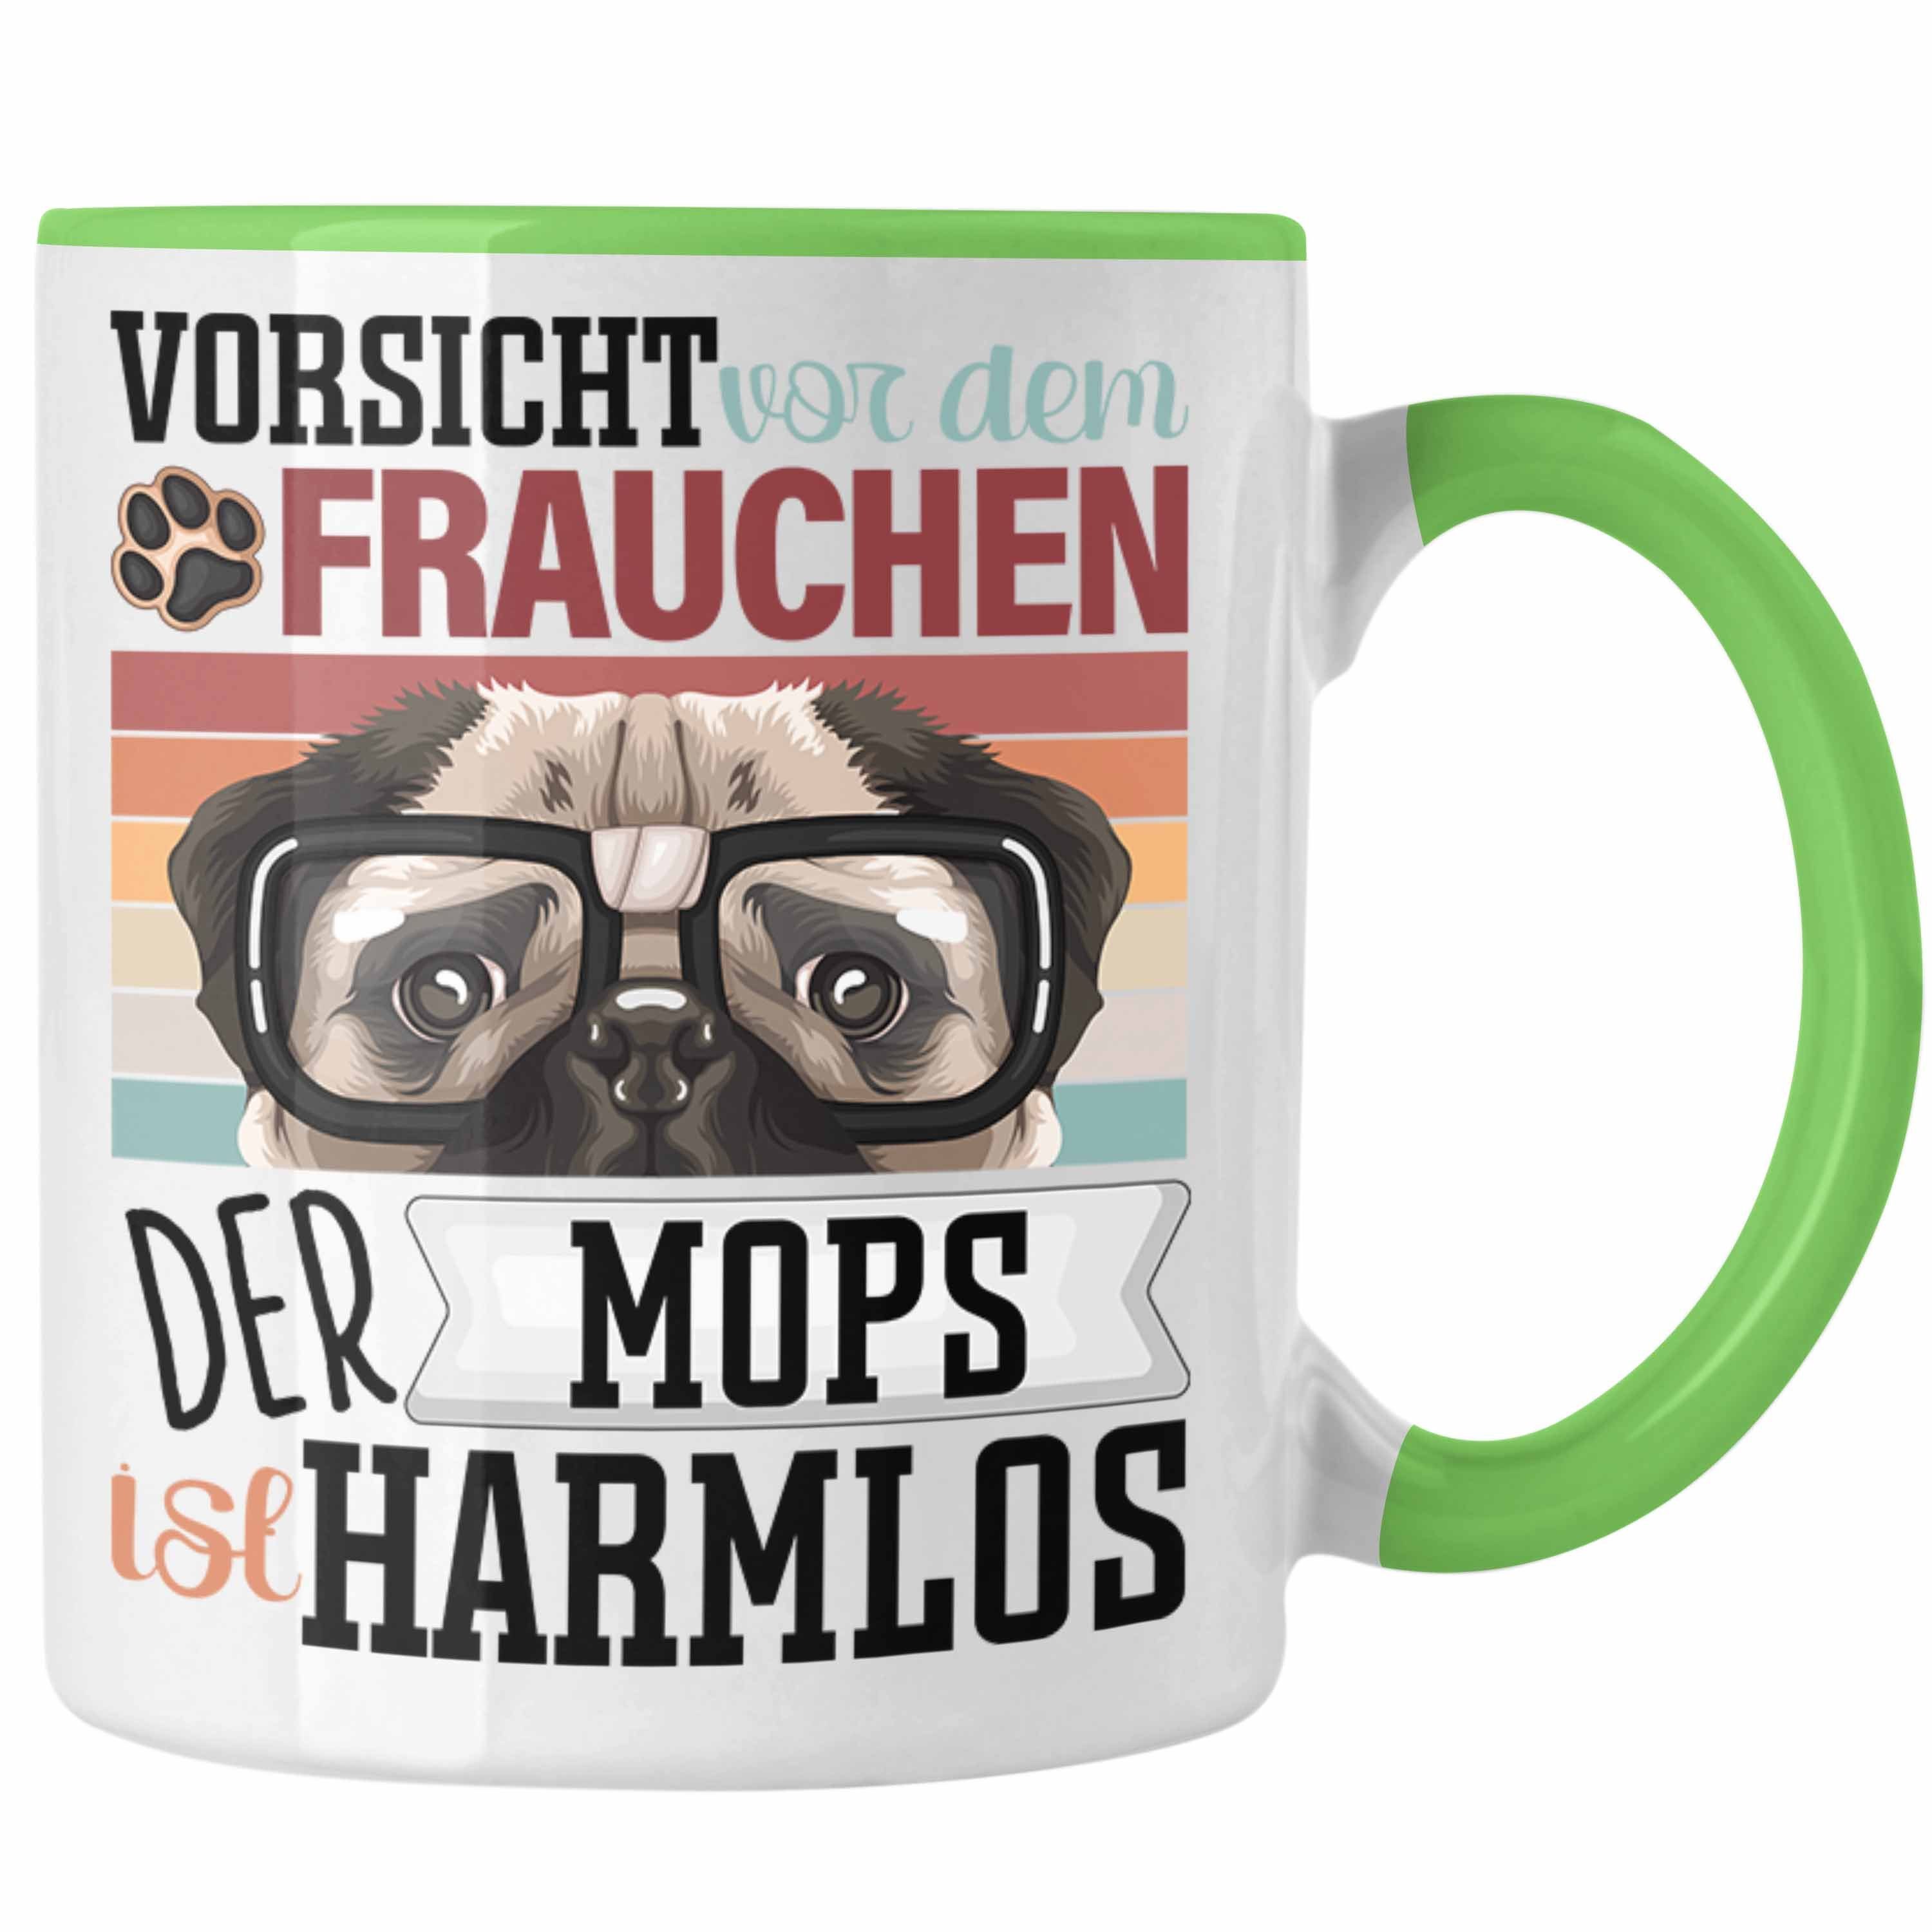 Trendation Tasse Besitzerin V Geschenkidee Mops Tasse Spruch Grün Lustiger Frauchen Geschenk